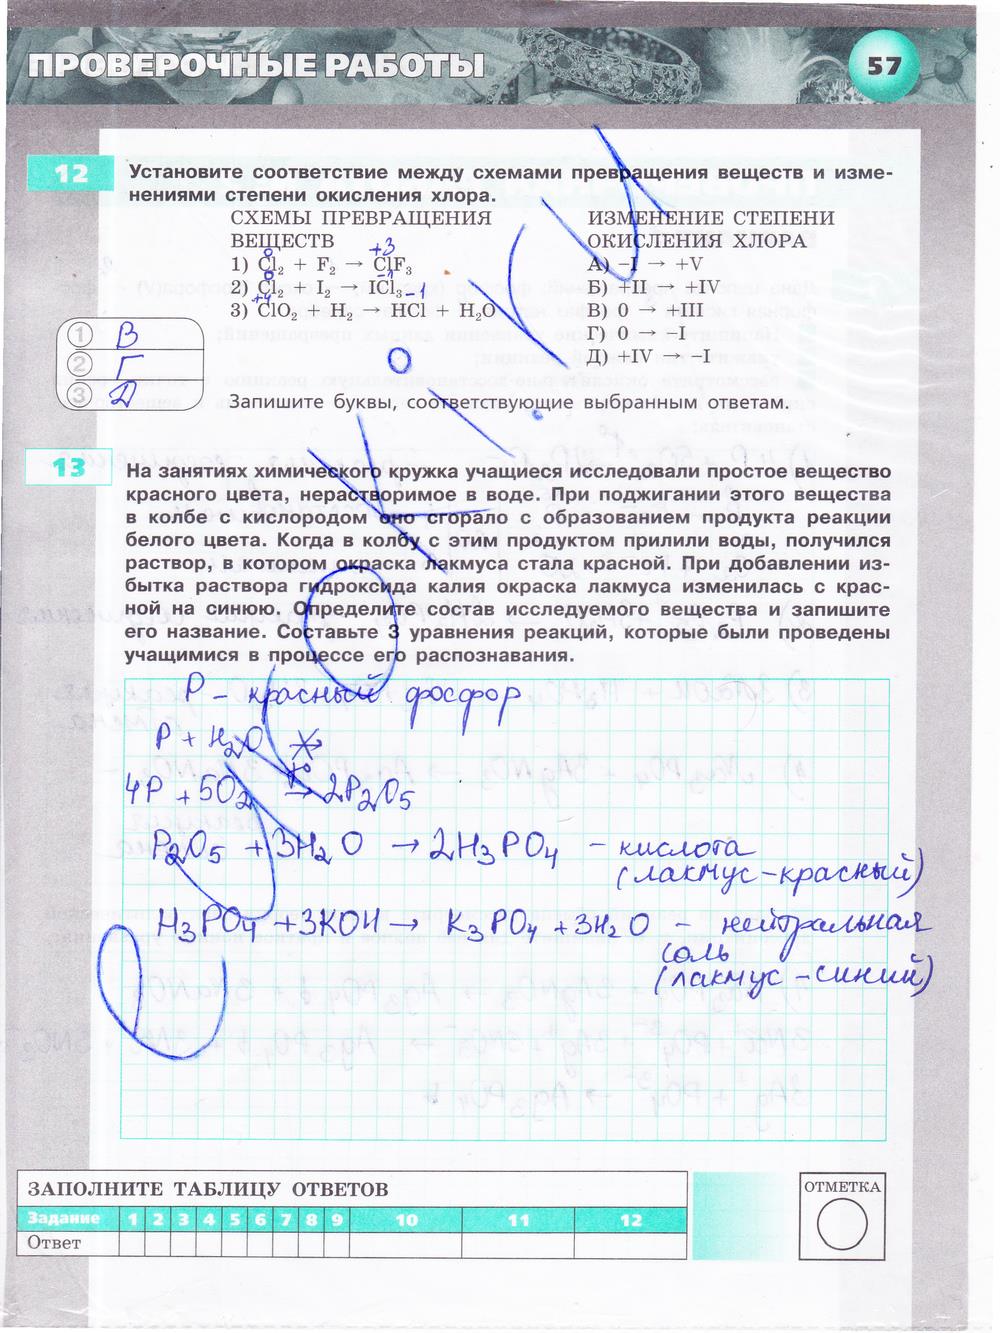 гдз 9 класс тетрадь-экзаменатор страница 57 химия Бобылева, Бирюлина